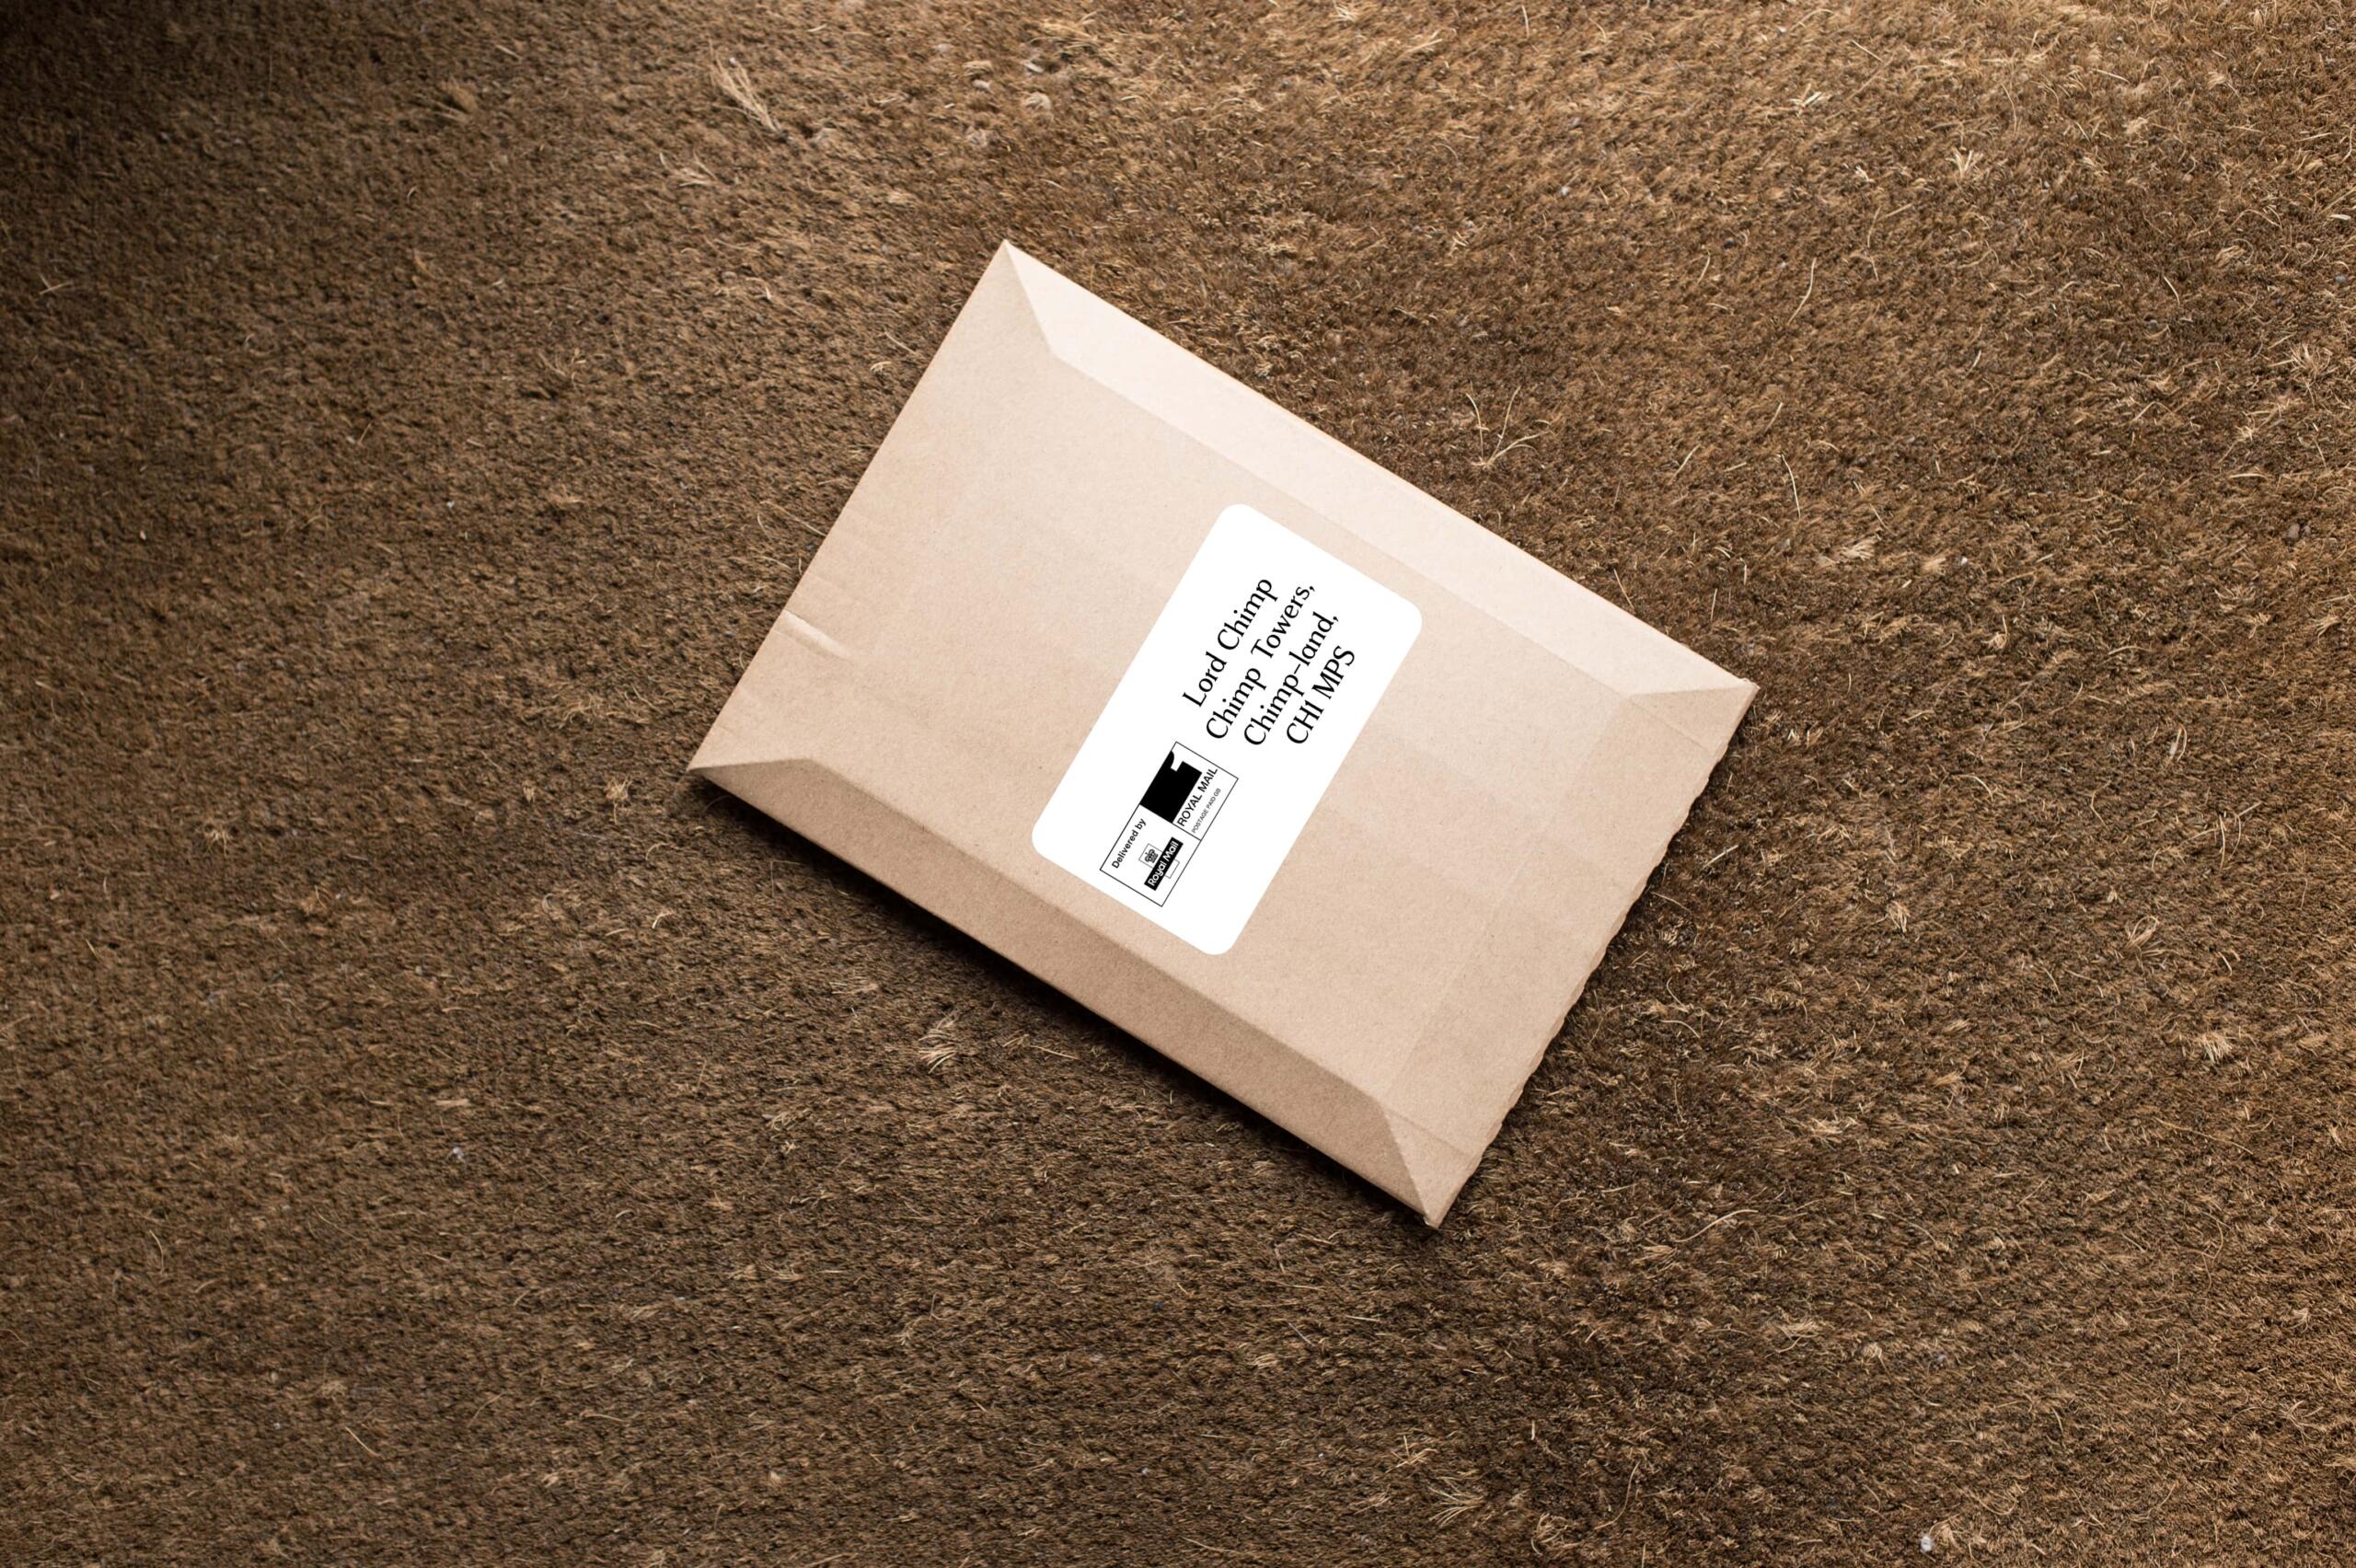 Coffee envelope sitting on doormat